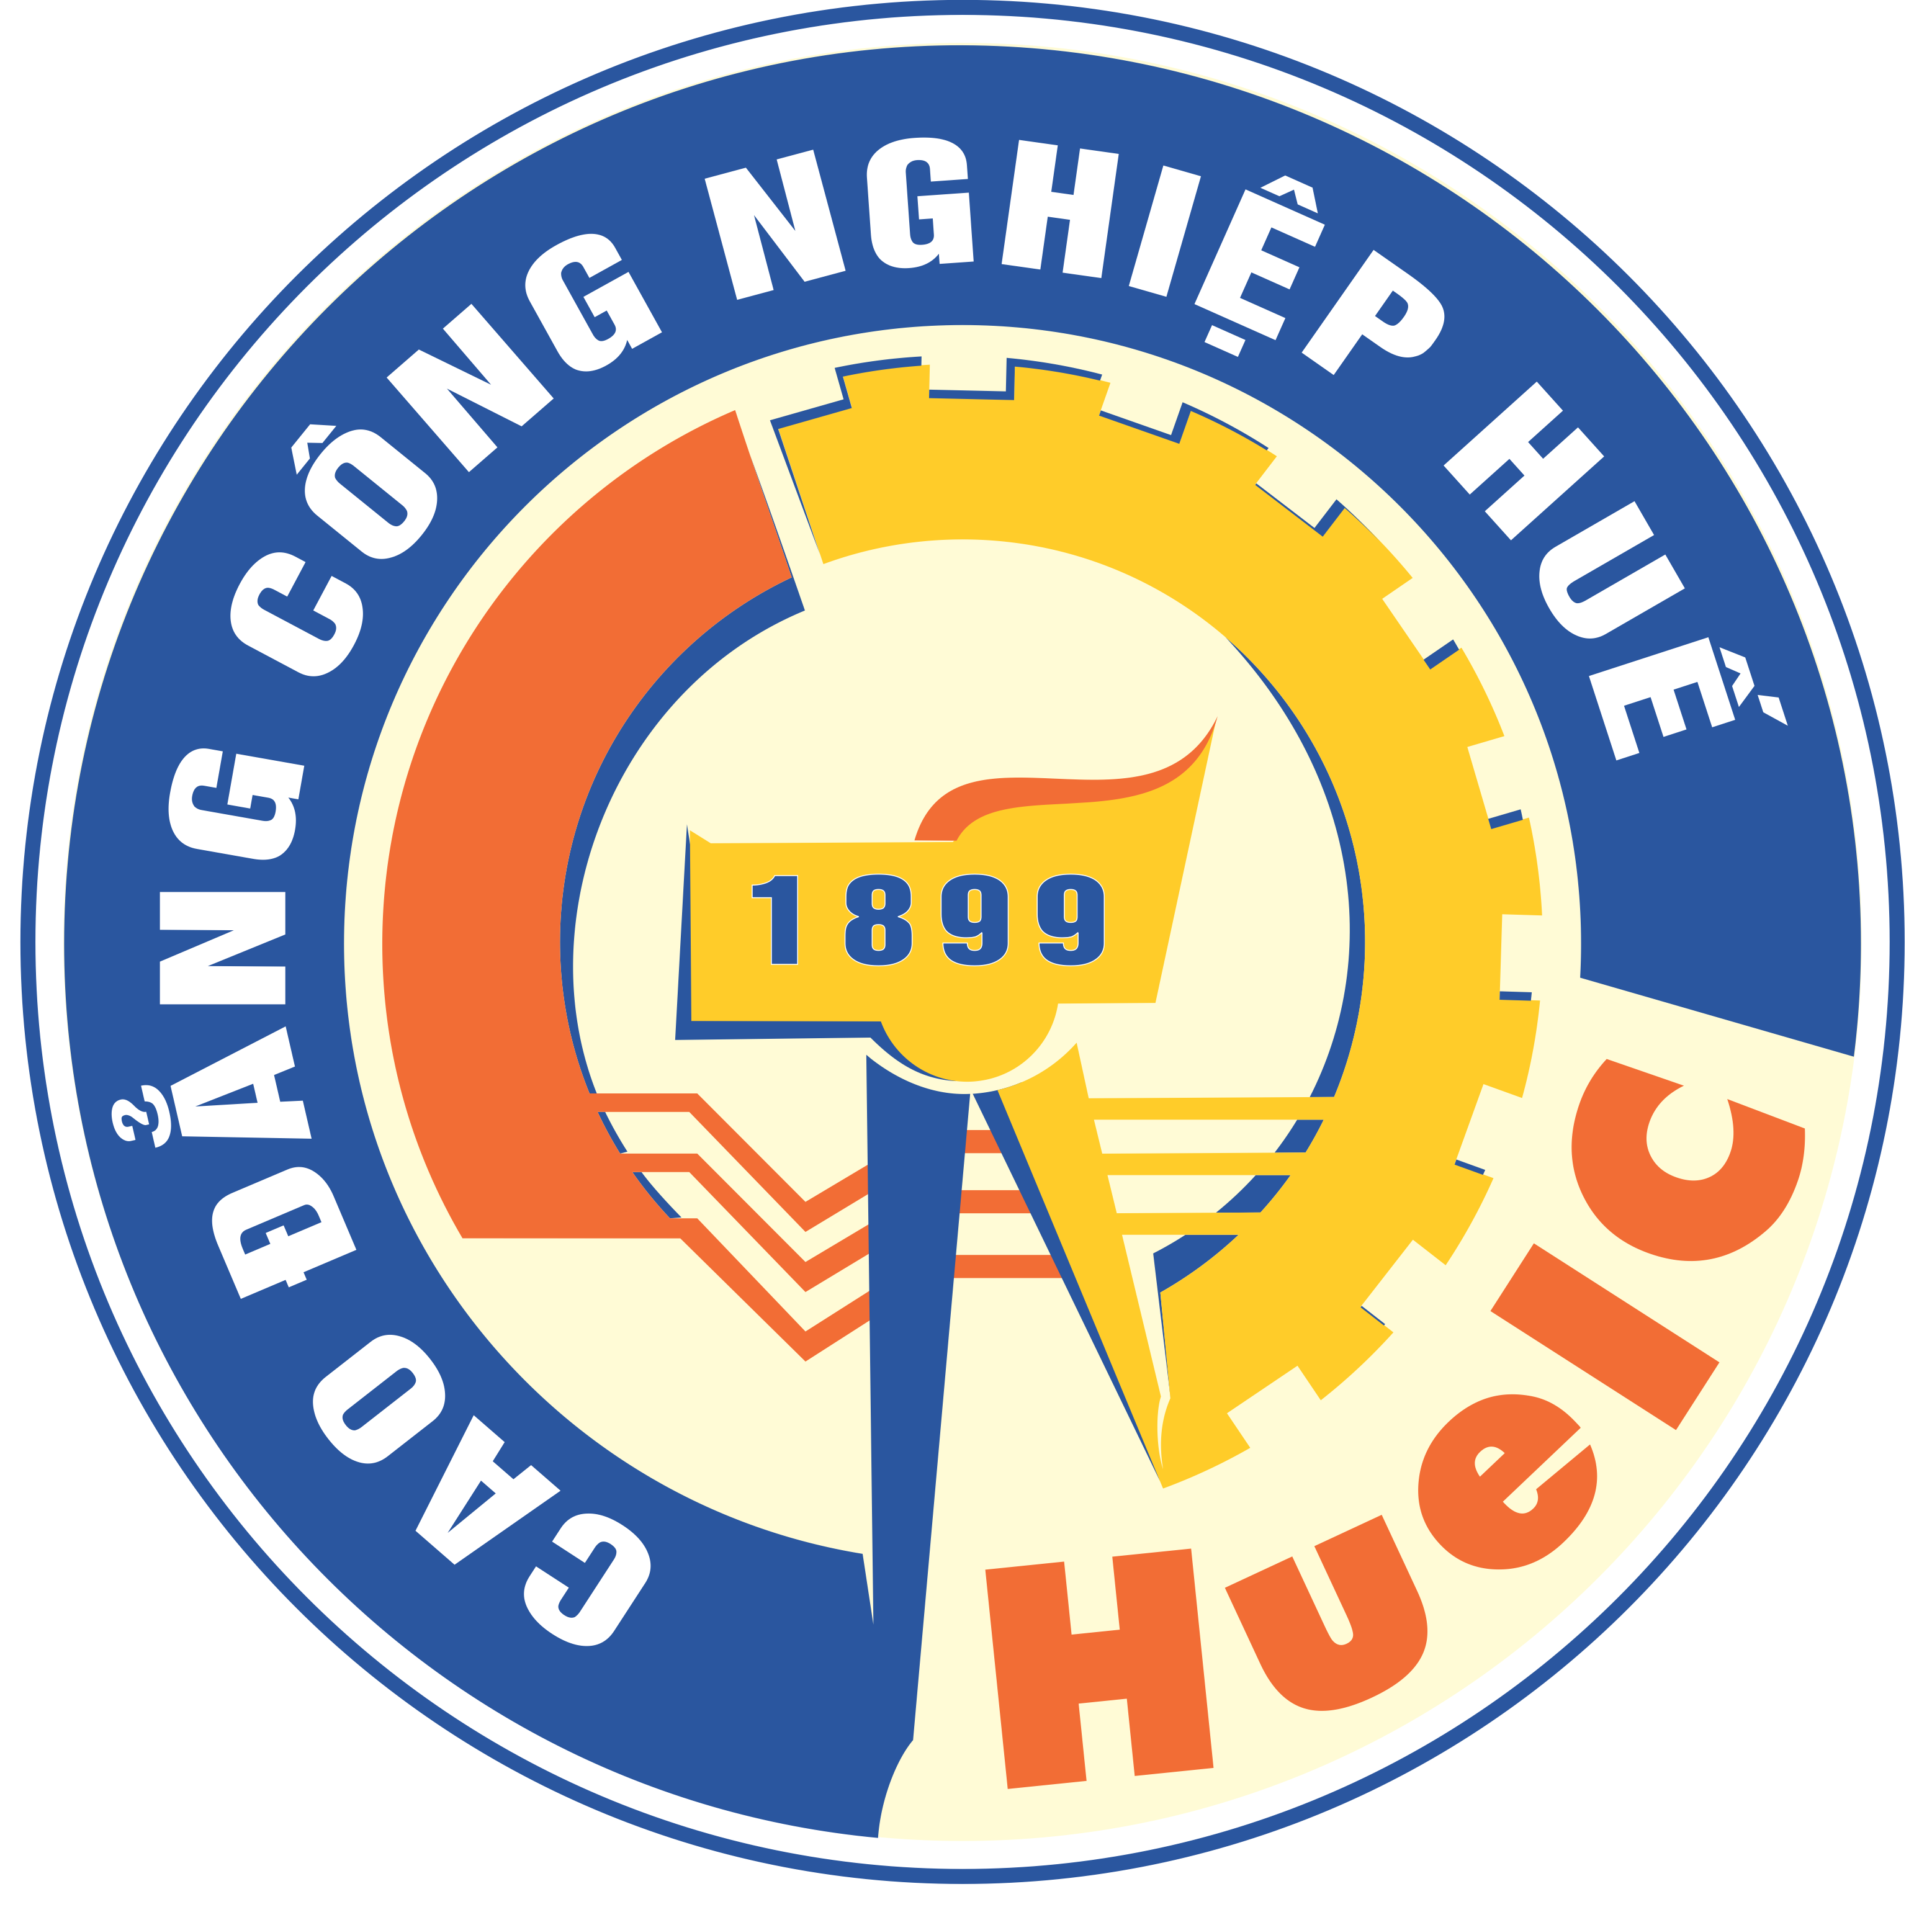 HUEIC's logo